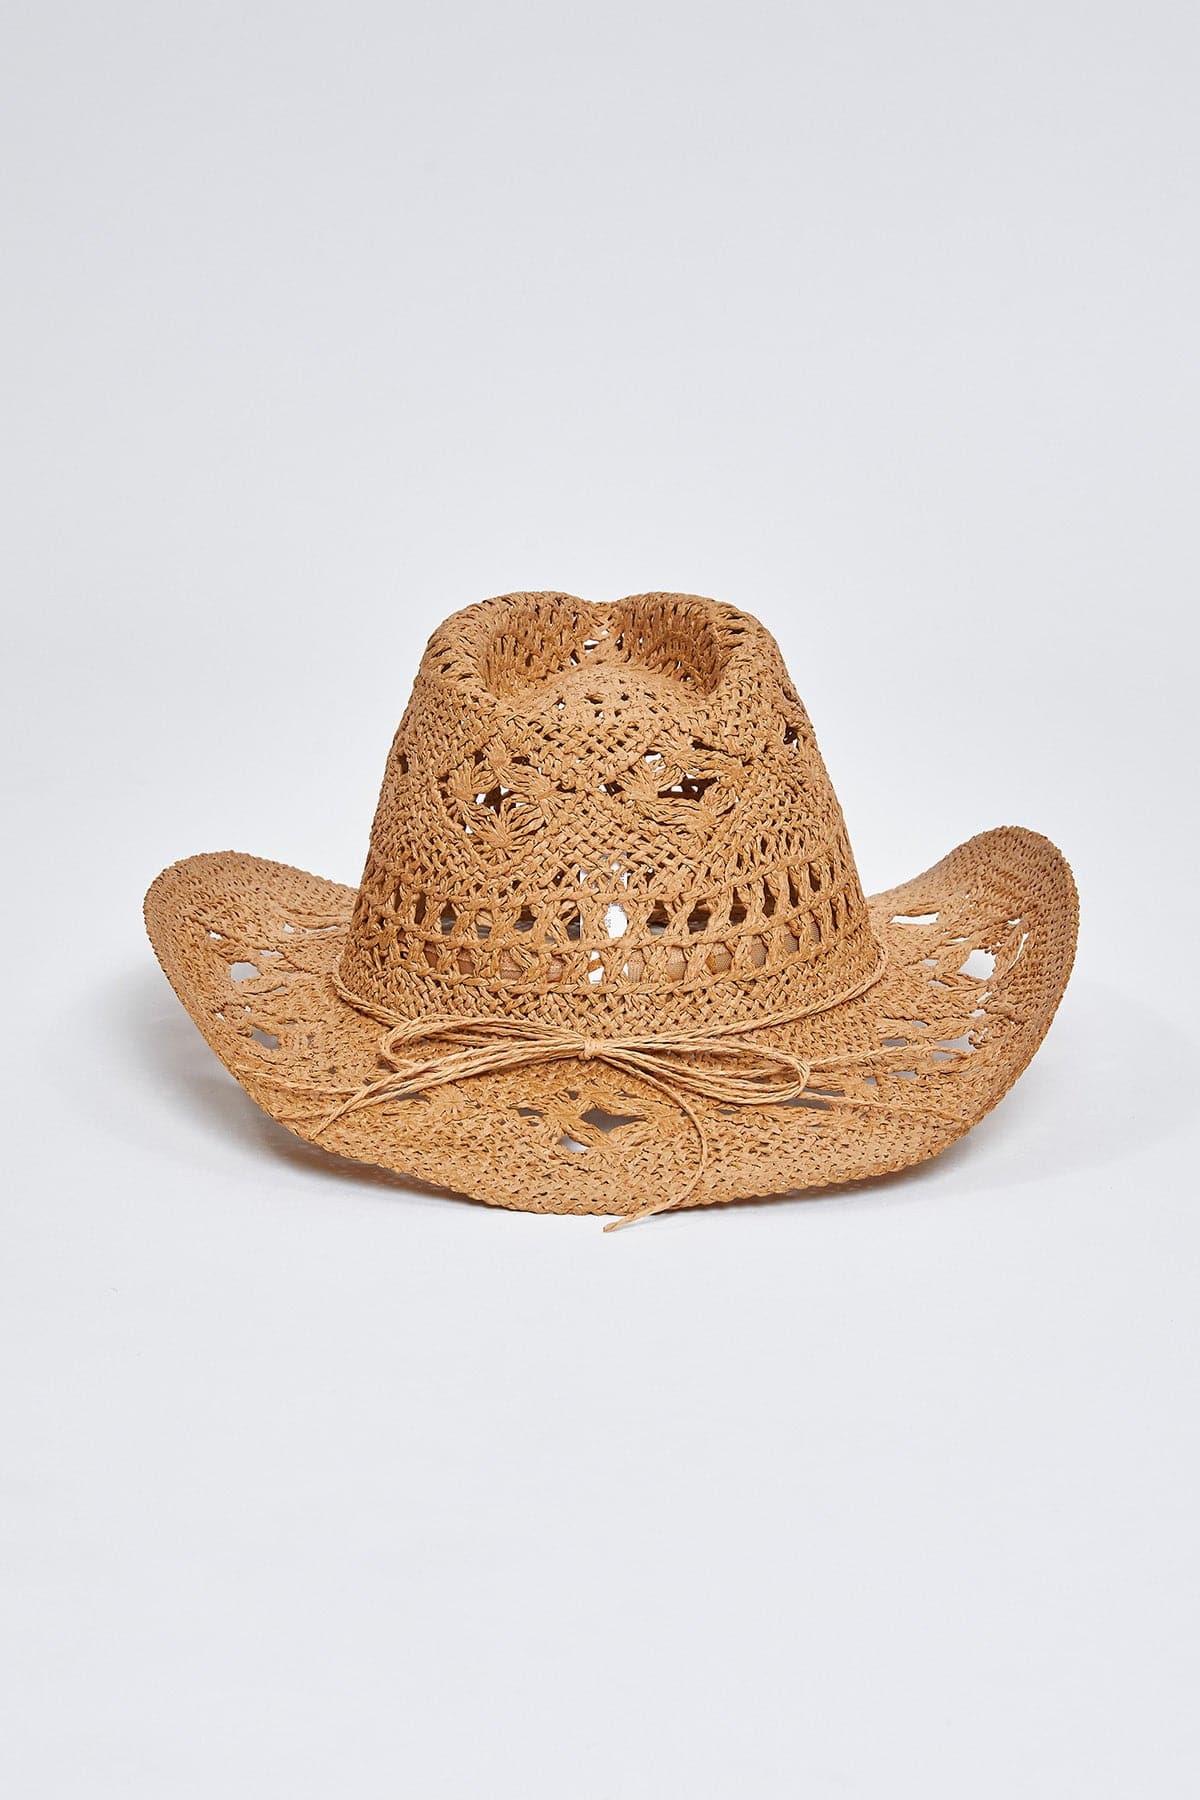 Cheyenne Tan Straw Cowboy Hat